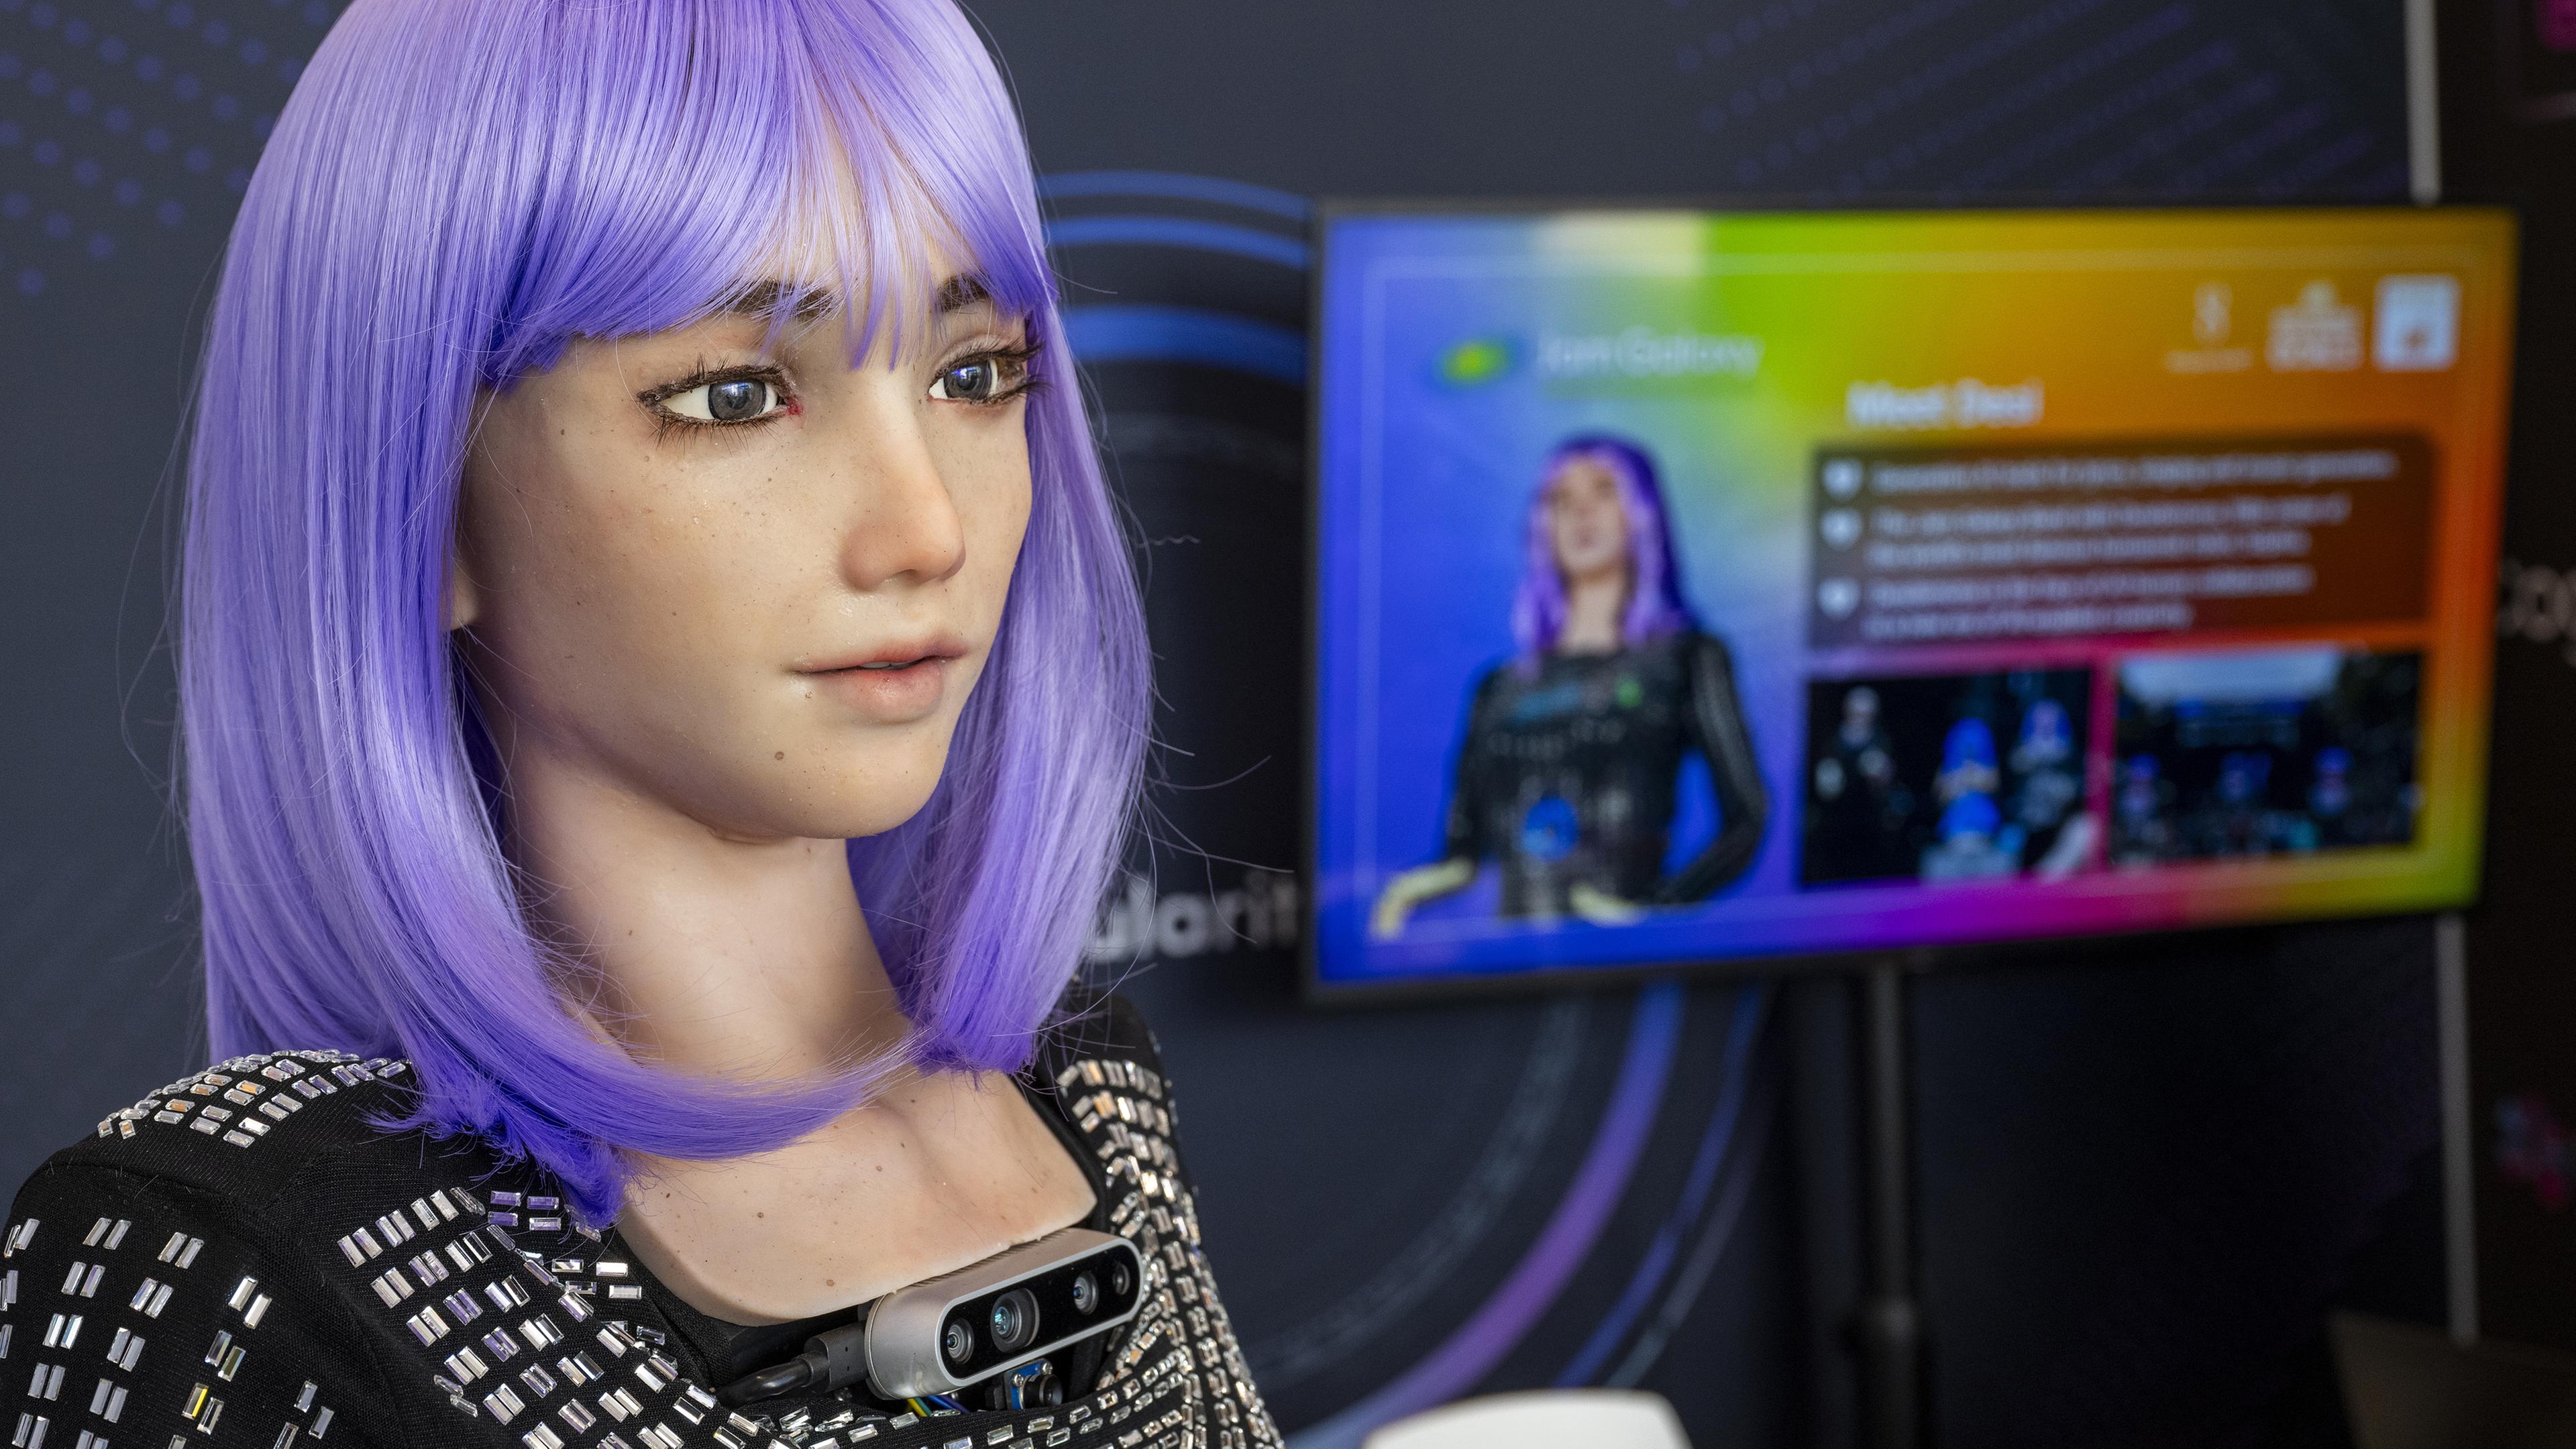 Schweiz, Genf: Der humanoide Roboter Desdemona wird während des ITU AI for Good Global Summit präsentiert.